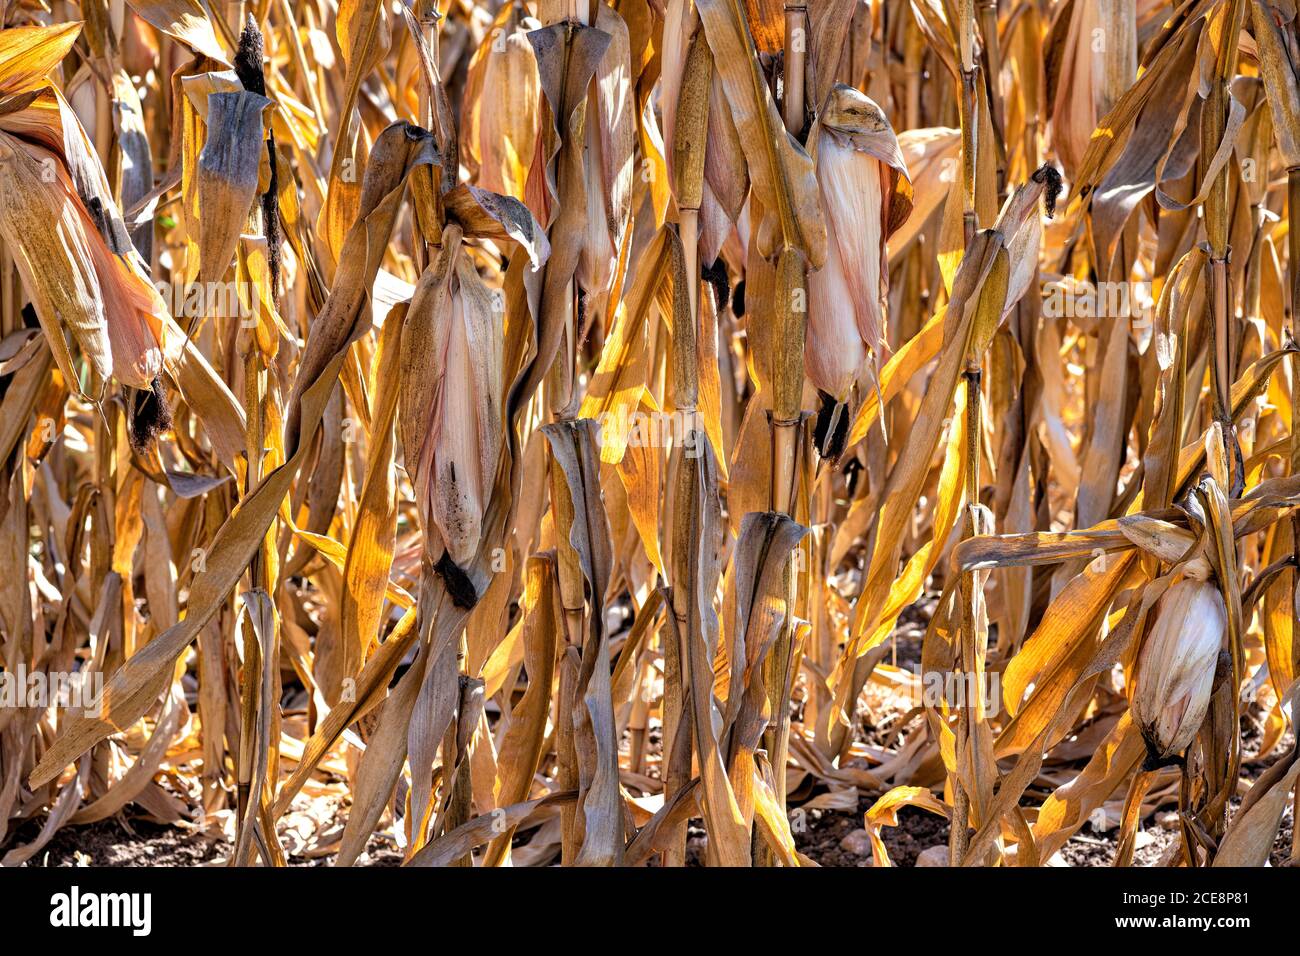 Trockene Stiele und Kugeln von reifen goldenen Mais in der Nahaufnahme der Hintergrundbeleuchtung Stockfoto